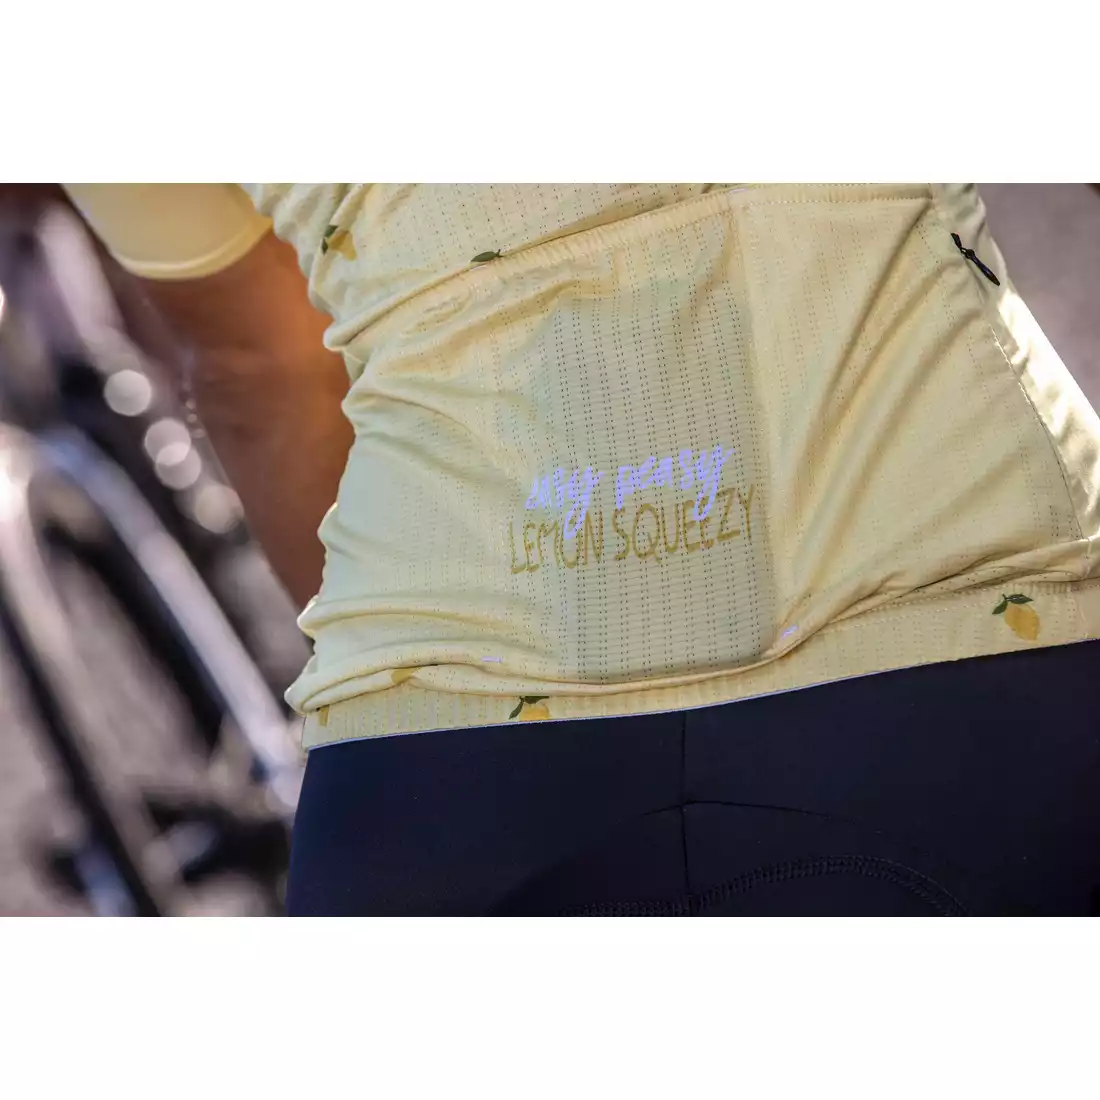 ROGELLI FRUITY Tricou de ciclism pentru femei, galben